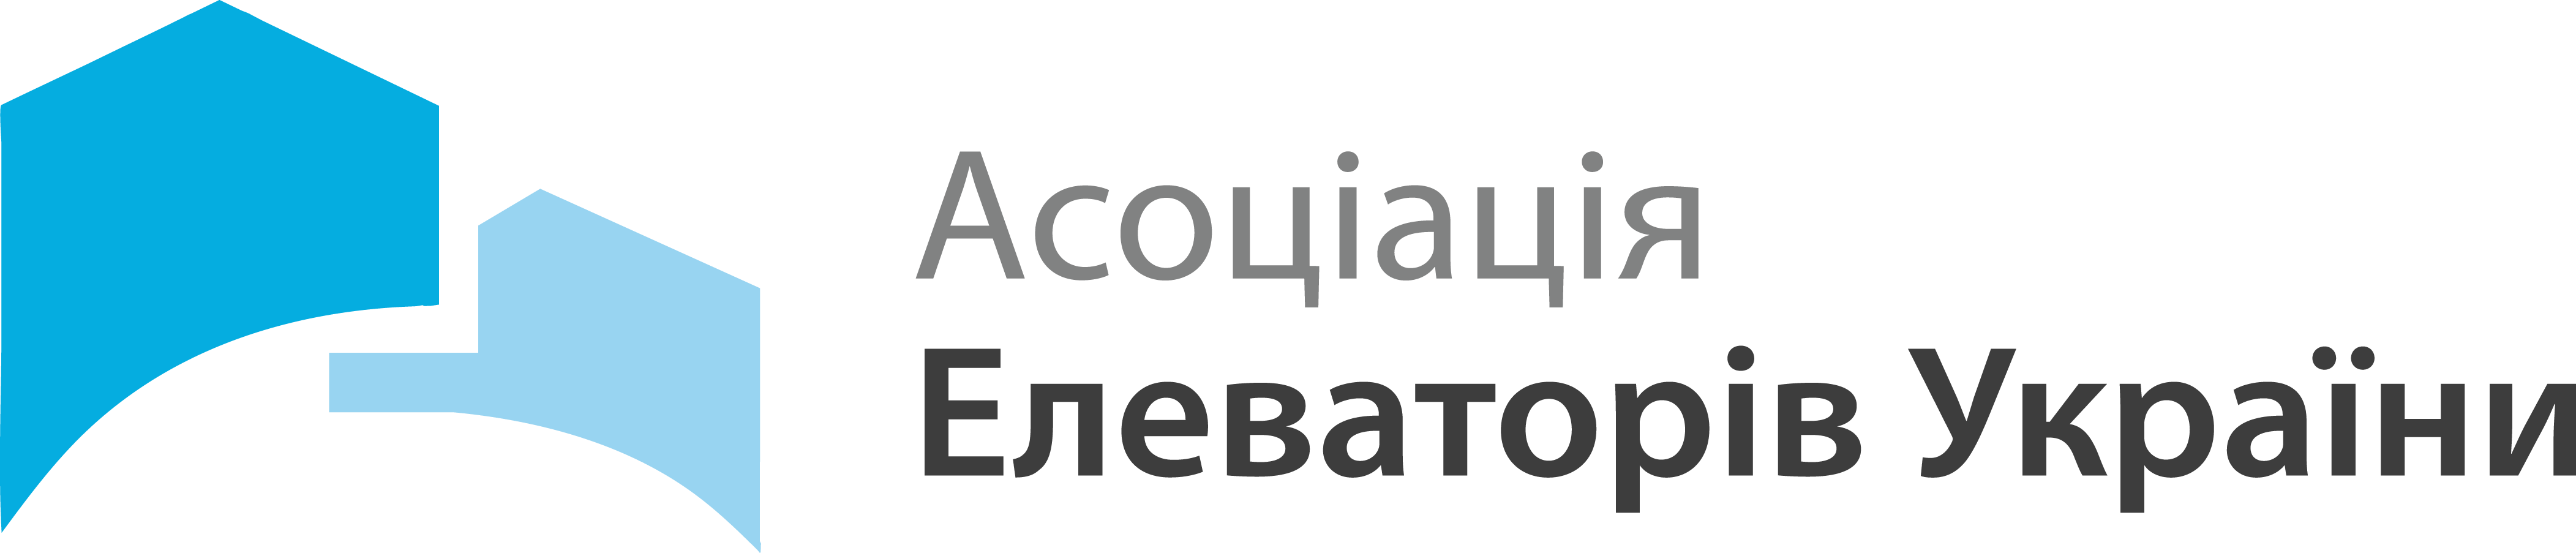 лого асоциации елеваторов-прозр